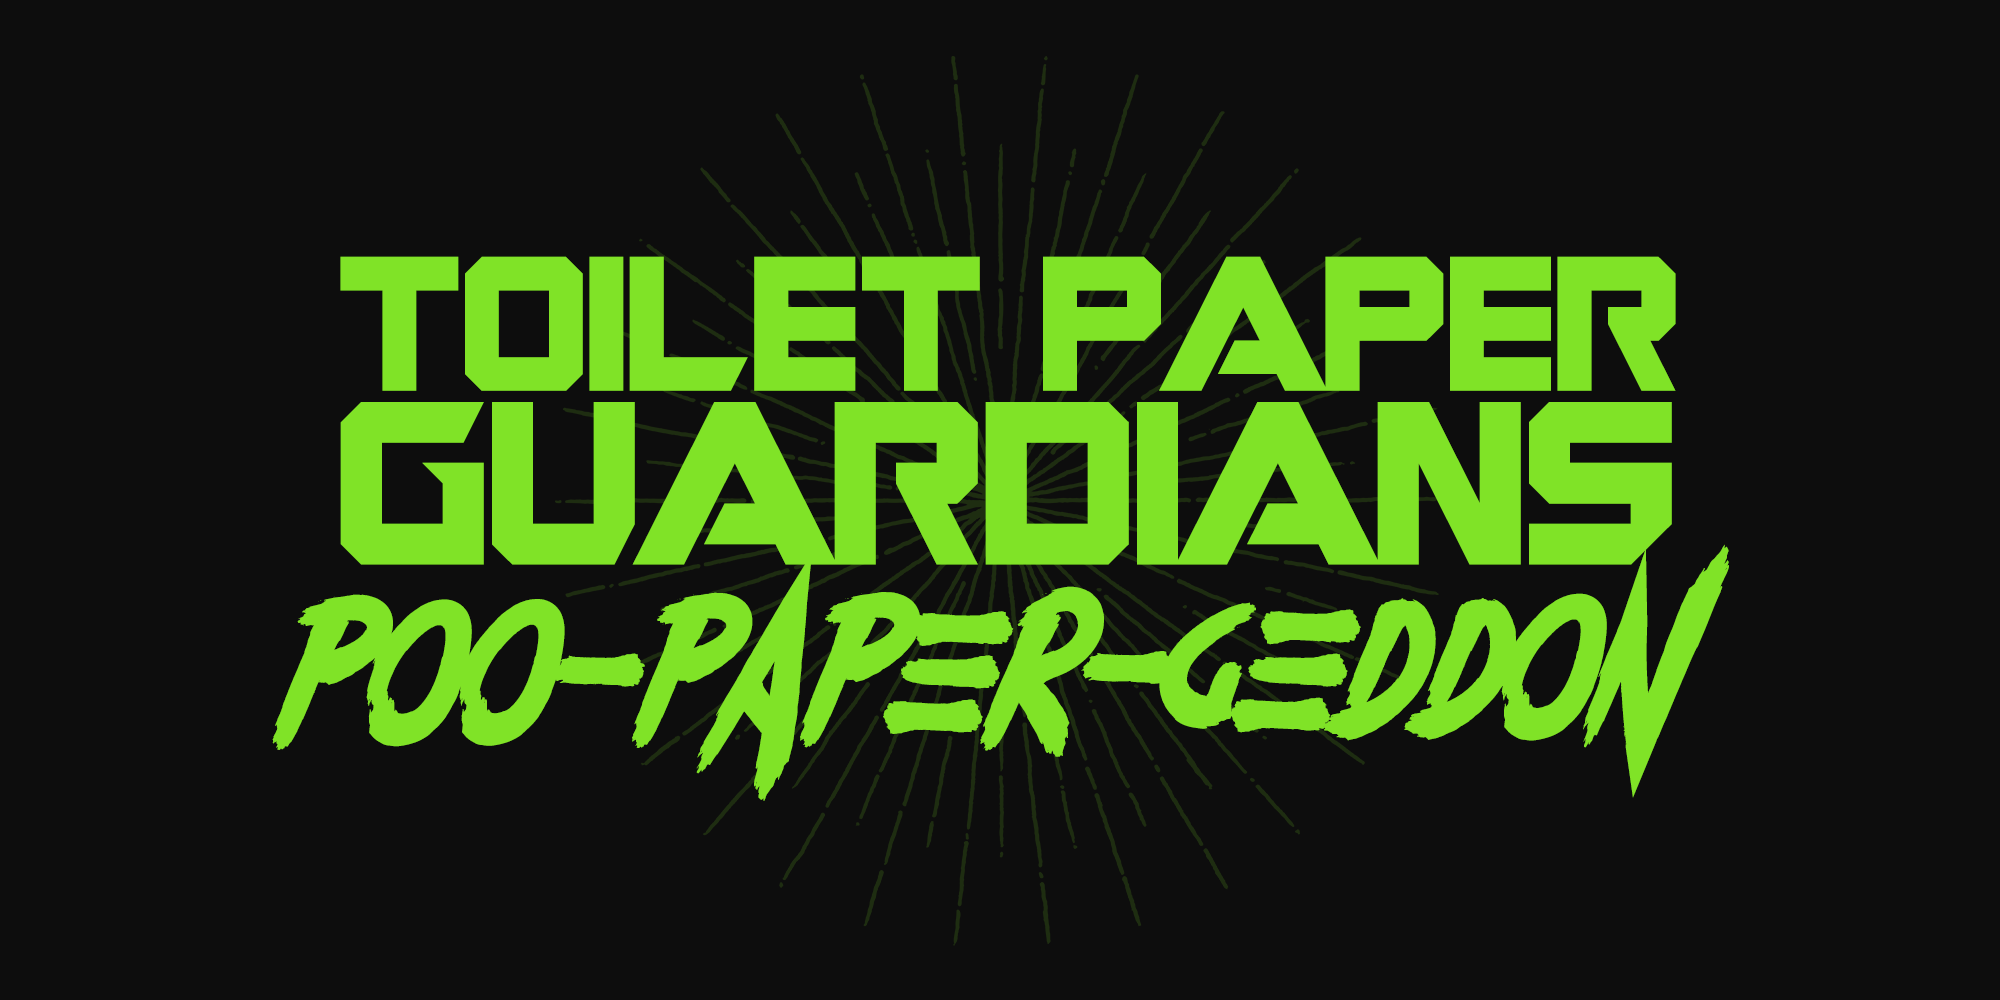 Toilet Paper Guardians: Poo-Paper-Guardians